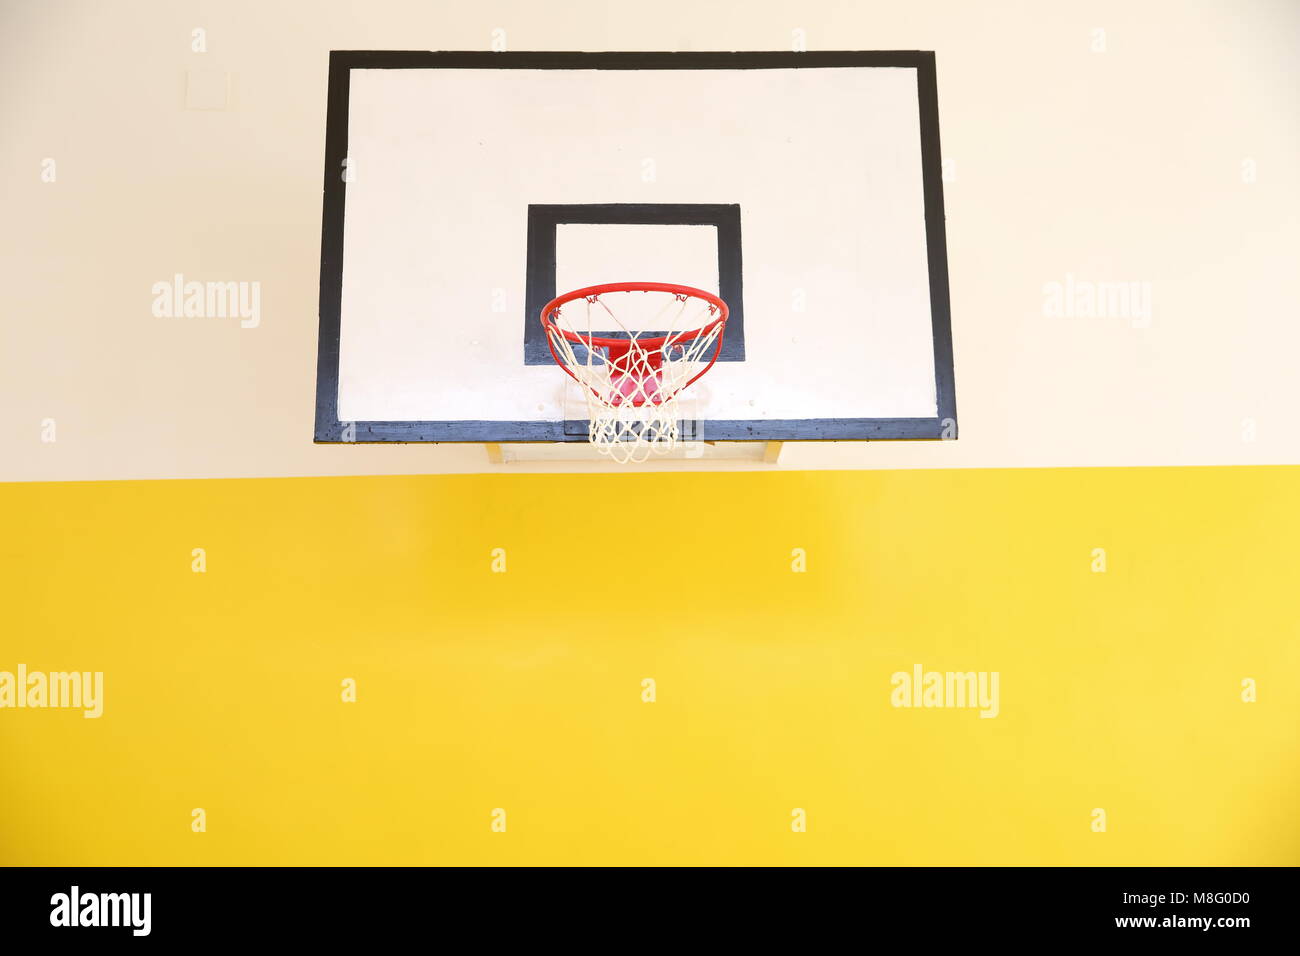 Conseils de basket-ball sont normalisés ainsi que leur hauteur sur laquelle ils sont placés de sorte que les joueurs de l'exercice dans les mêmes conditions. Banque D'Images